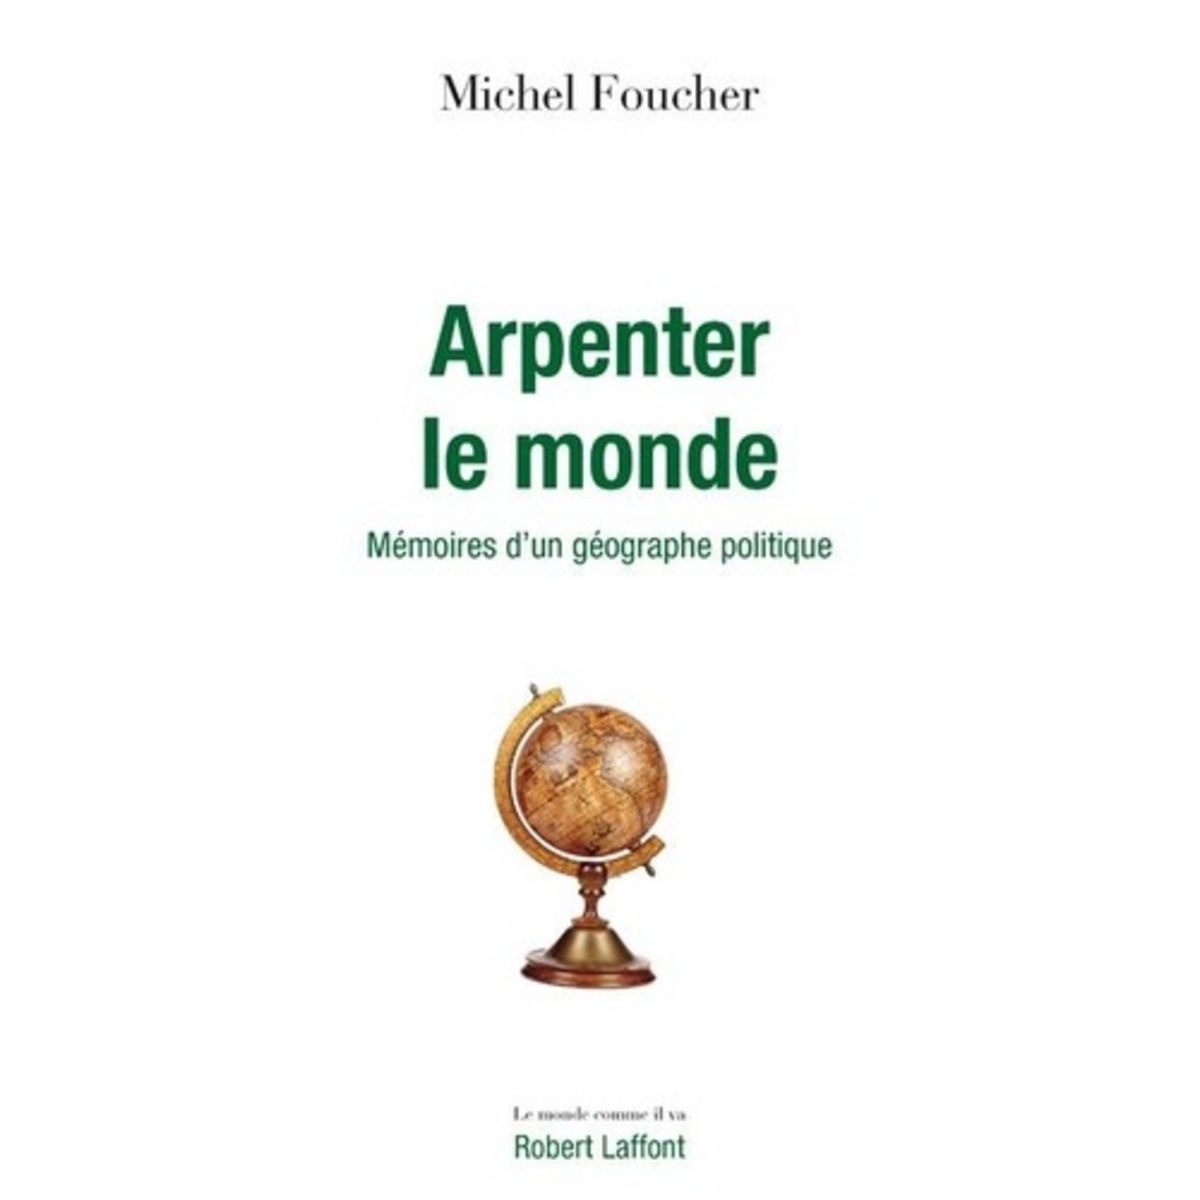  ARPENTER LE MONDE. MEMOIRES D'UN GEOGRAPHE POLITIQUE, Foucher Michel